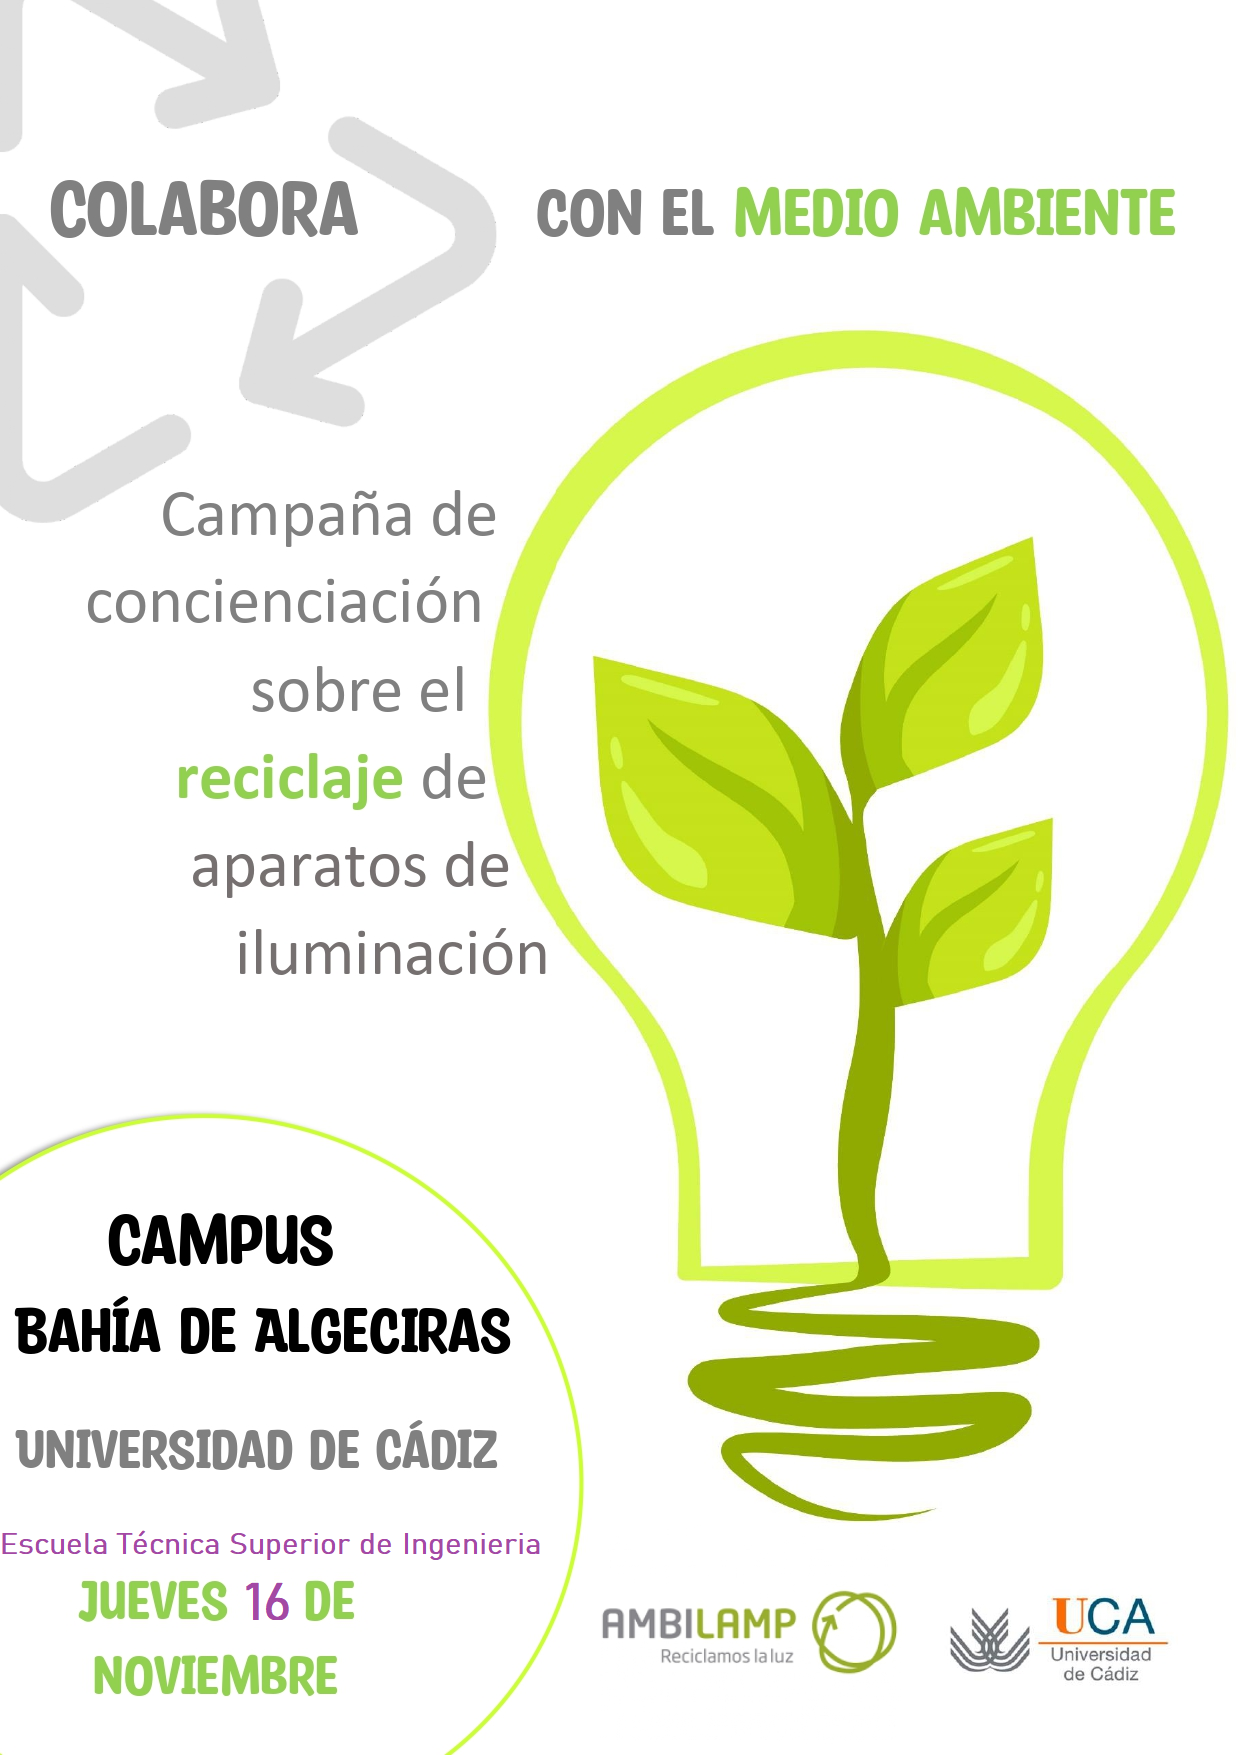 LLega a la Universidad de Cádiz  AMBILAMP y su campaña de concienciación sobre el reciclaje de aparatos de iluminación